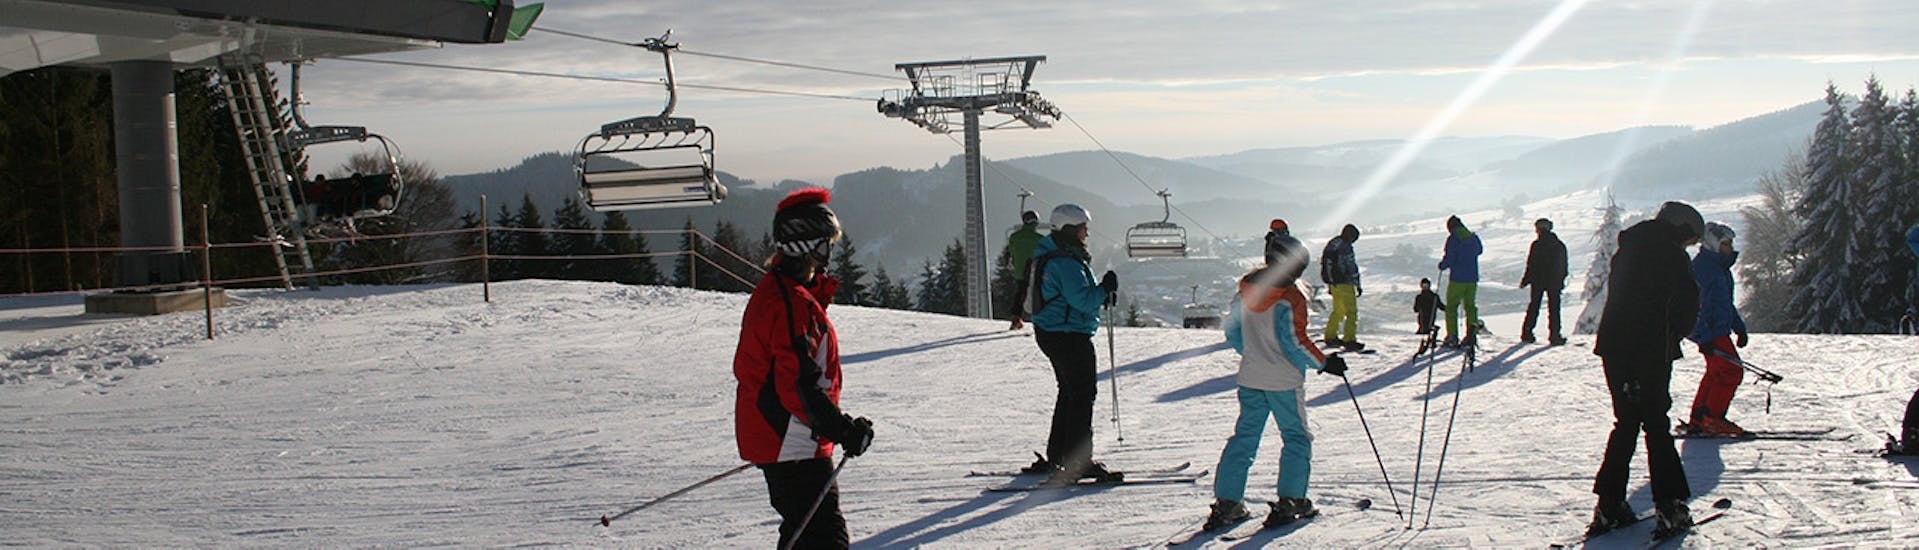 Clases de esquí para niños a partir de 11 años para principiantes.